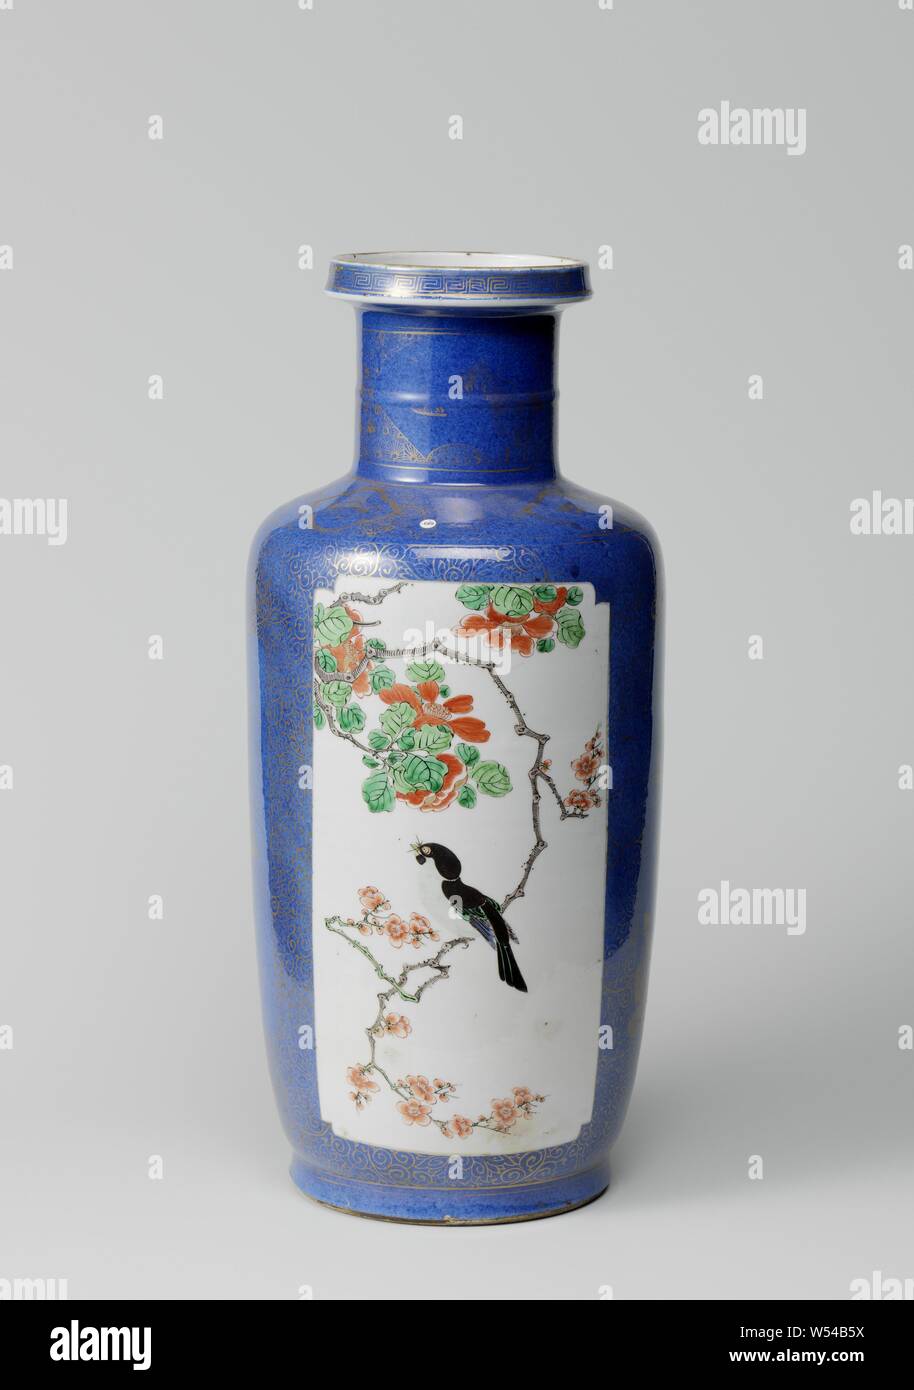 Vase cylindrique de poudre bleu et panneaux en réserve avec les sprays de fleurs et oiseaux bleu, rouge, vert, jaune, noir et or. Le vase est recouvert de bleu poudré (bleu poudre) avec deux cartouches Rectangulaire avec coins pressé rempli d'un oiseau sur une branche de fleurs (prunus et de pivoine), sur la décoration d'un bleu dans l'or de la boucle de fleurs stylisées et de deux cartouches Rectangulaire avec coins pincés, l'une remplie de roches, du bambou et de la direction générale des deux oiseaux, l'autre avec la direction générale de prunus et un papillon sur l'épaule, une bande ruyi avec motif motif géométrique alternant avec des cartouches lobes Banque D'Images